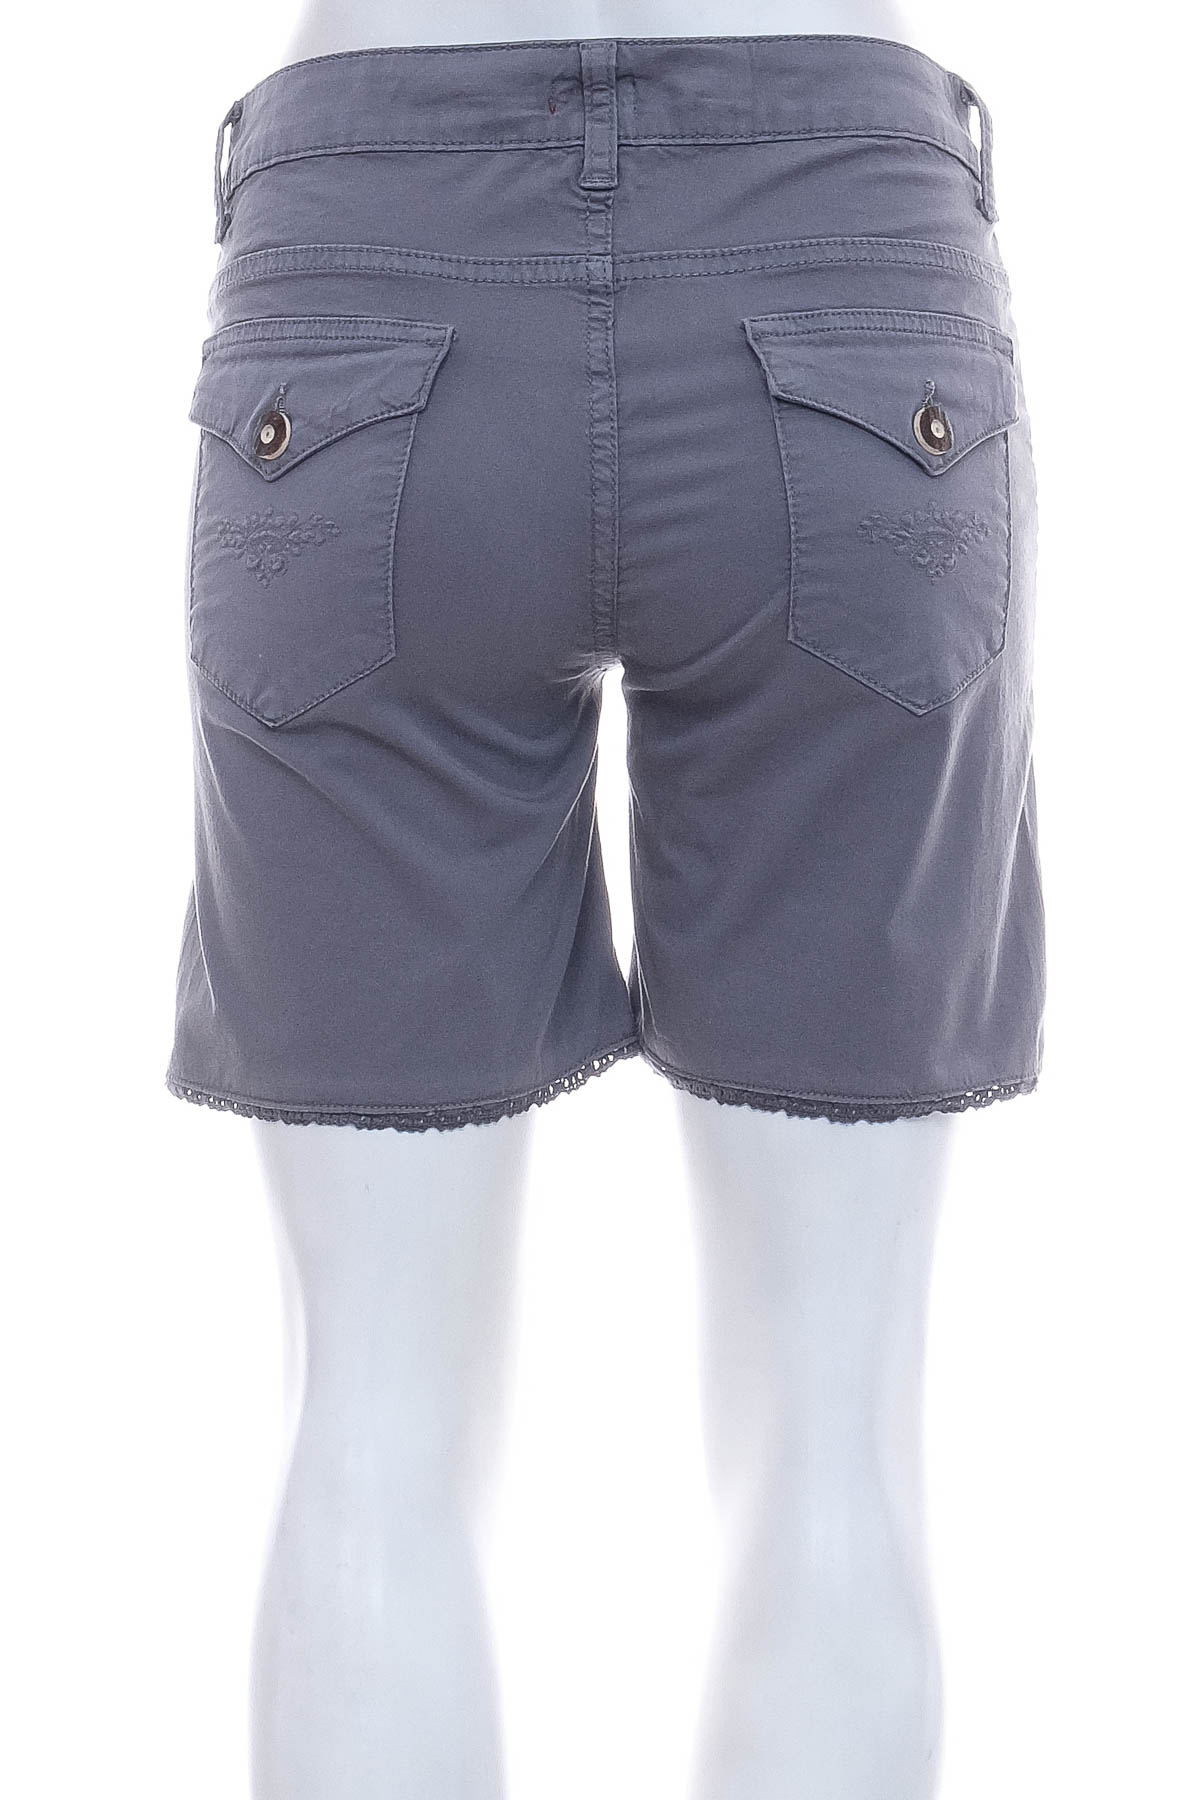 Female shorts - Almgwand - 1